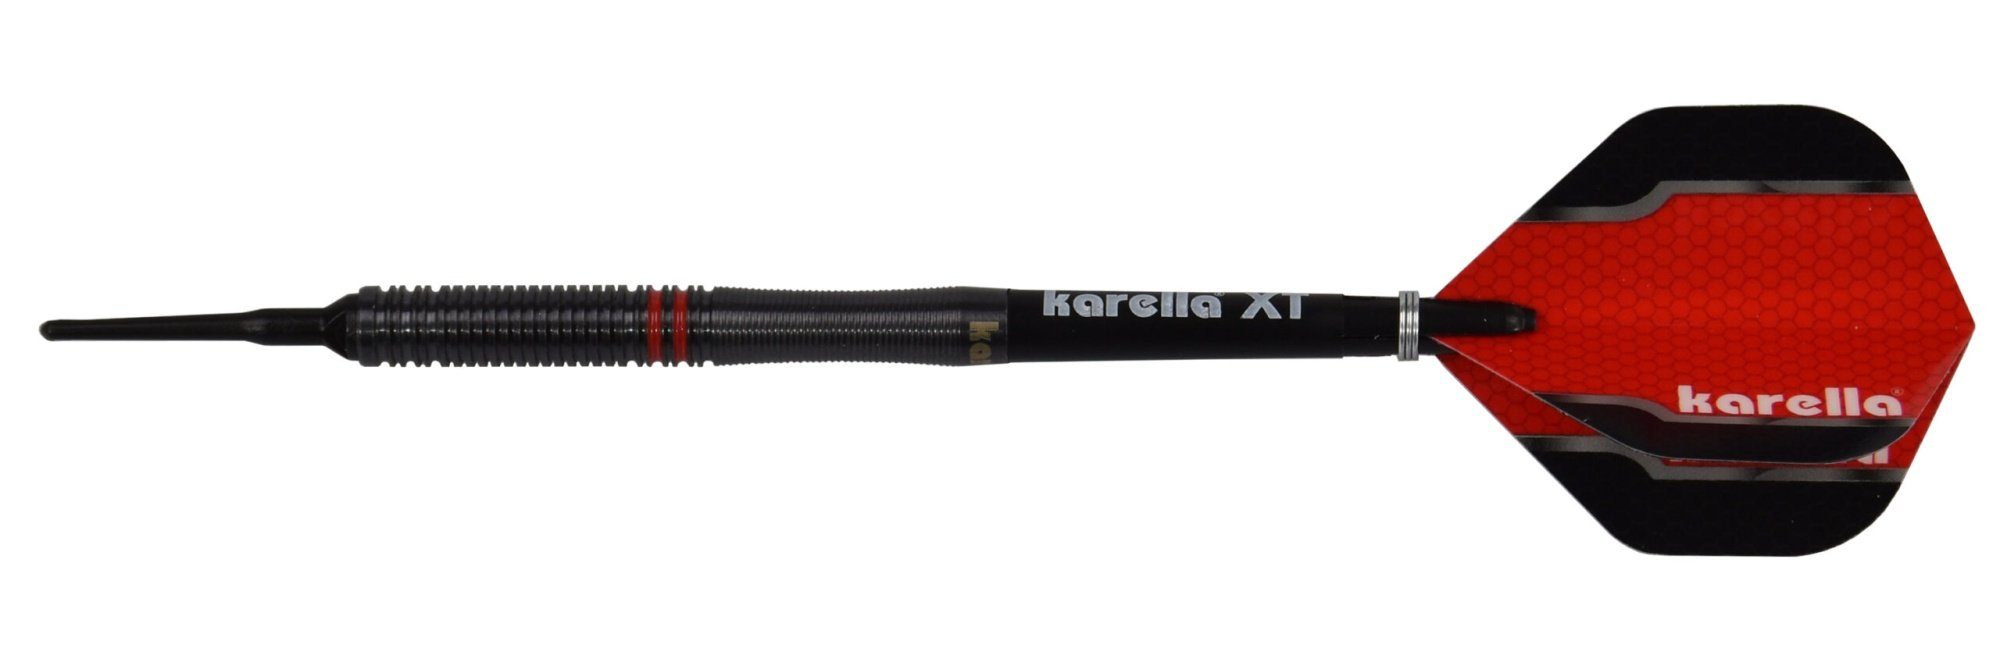 oder Softdart Karella Fighter, schwarz, Tungsten, 20g Karella 90% 22g Dartpfeil